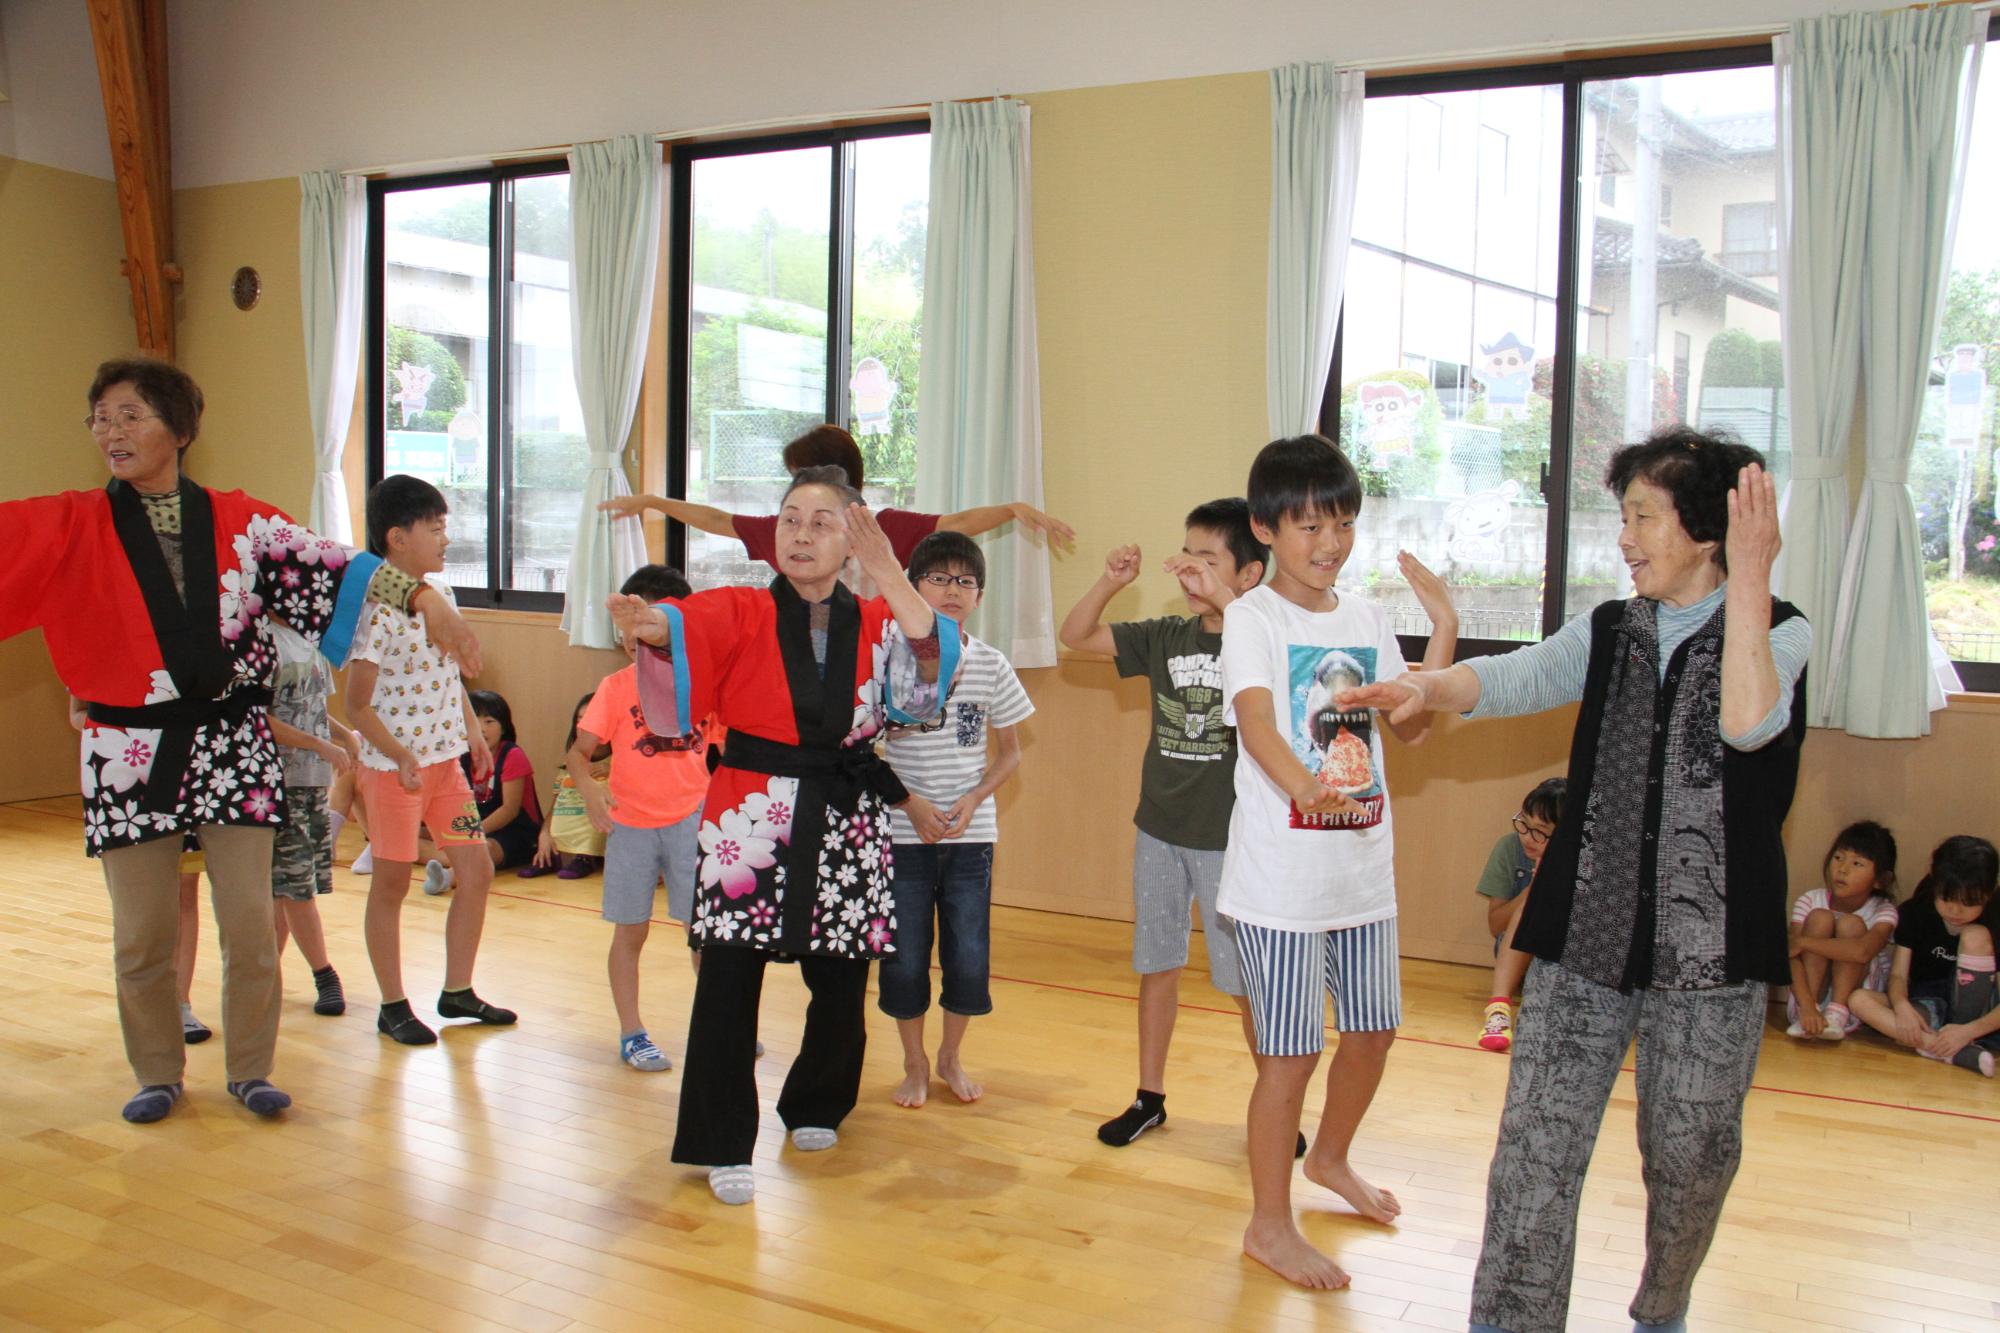 地域の高齢者から盆踊りを教わる子どもたちの様子